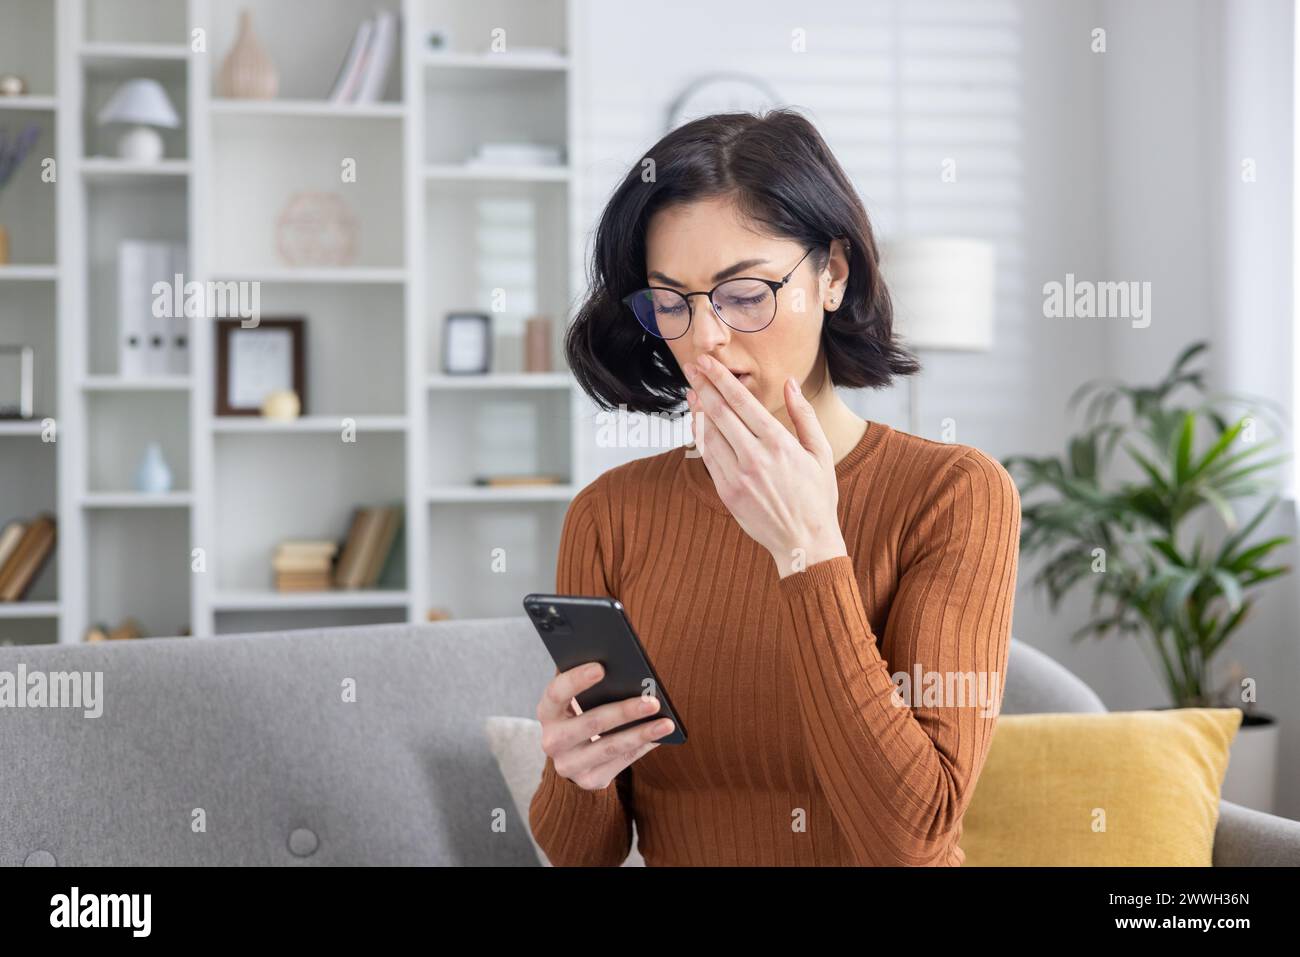 Eine sichtbar beunruhigte Frau, die ein Telefon hält und Verwirrung und Besorgnis schildert, möglicherweise nachdem sie beunruhigende Nachrichten erhalten hatte. Stockfoto